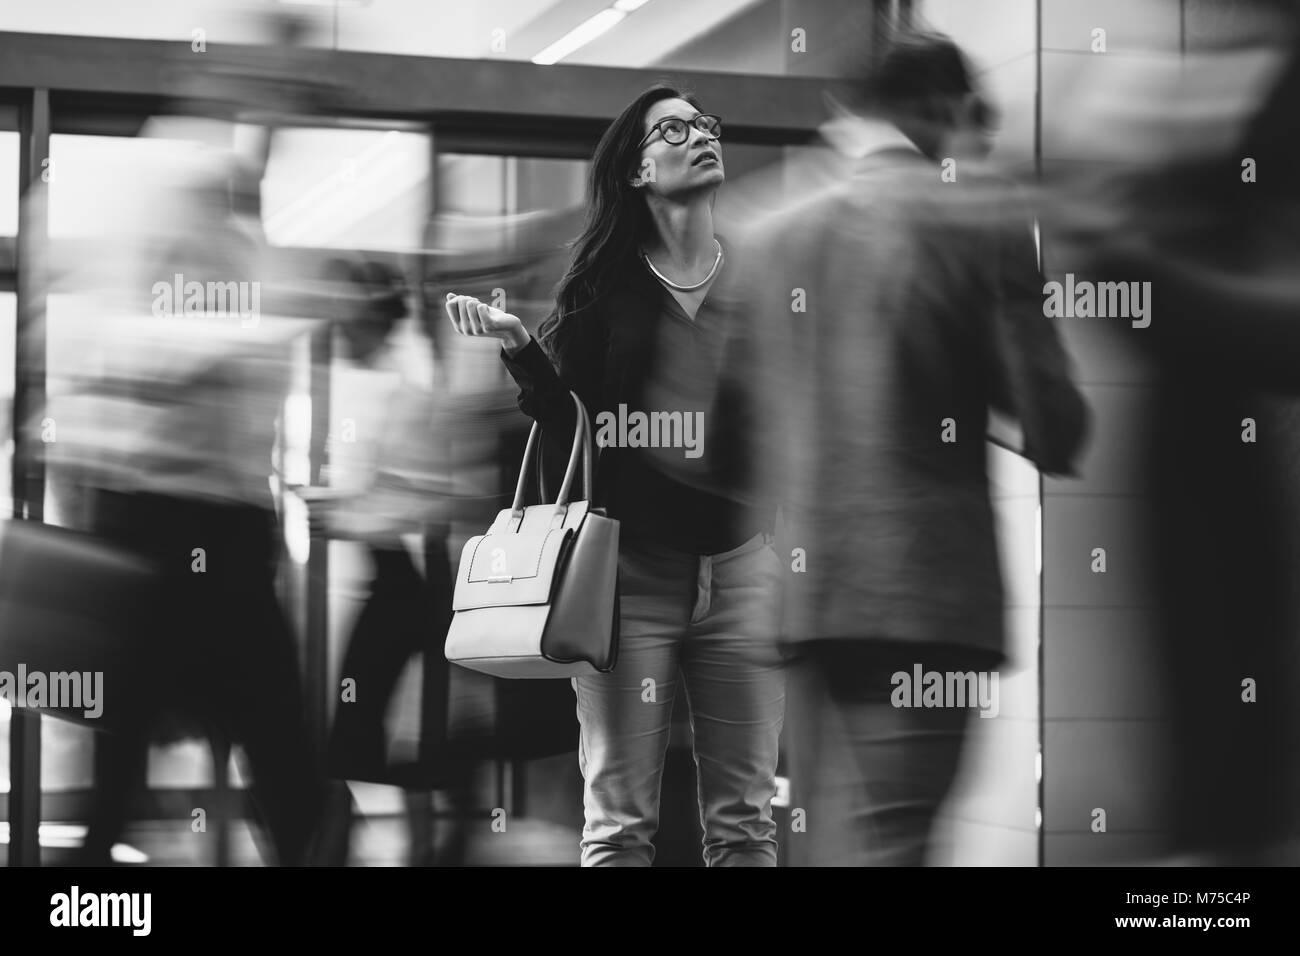 Asiatische Geschäftsfrau, die darauf warten, dass jemand mit den Leuten in der Lobby zu hetzen. Motion blur Effekt. Schwarzweiß gedreht. Stockfoto